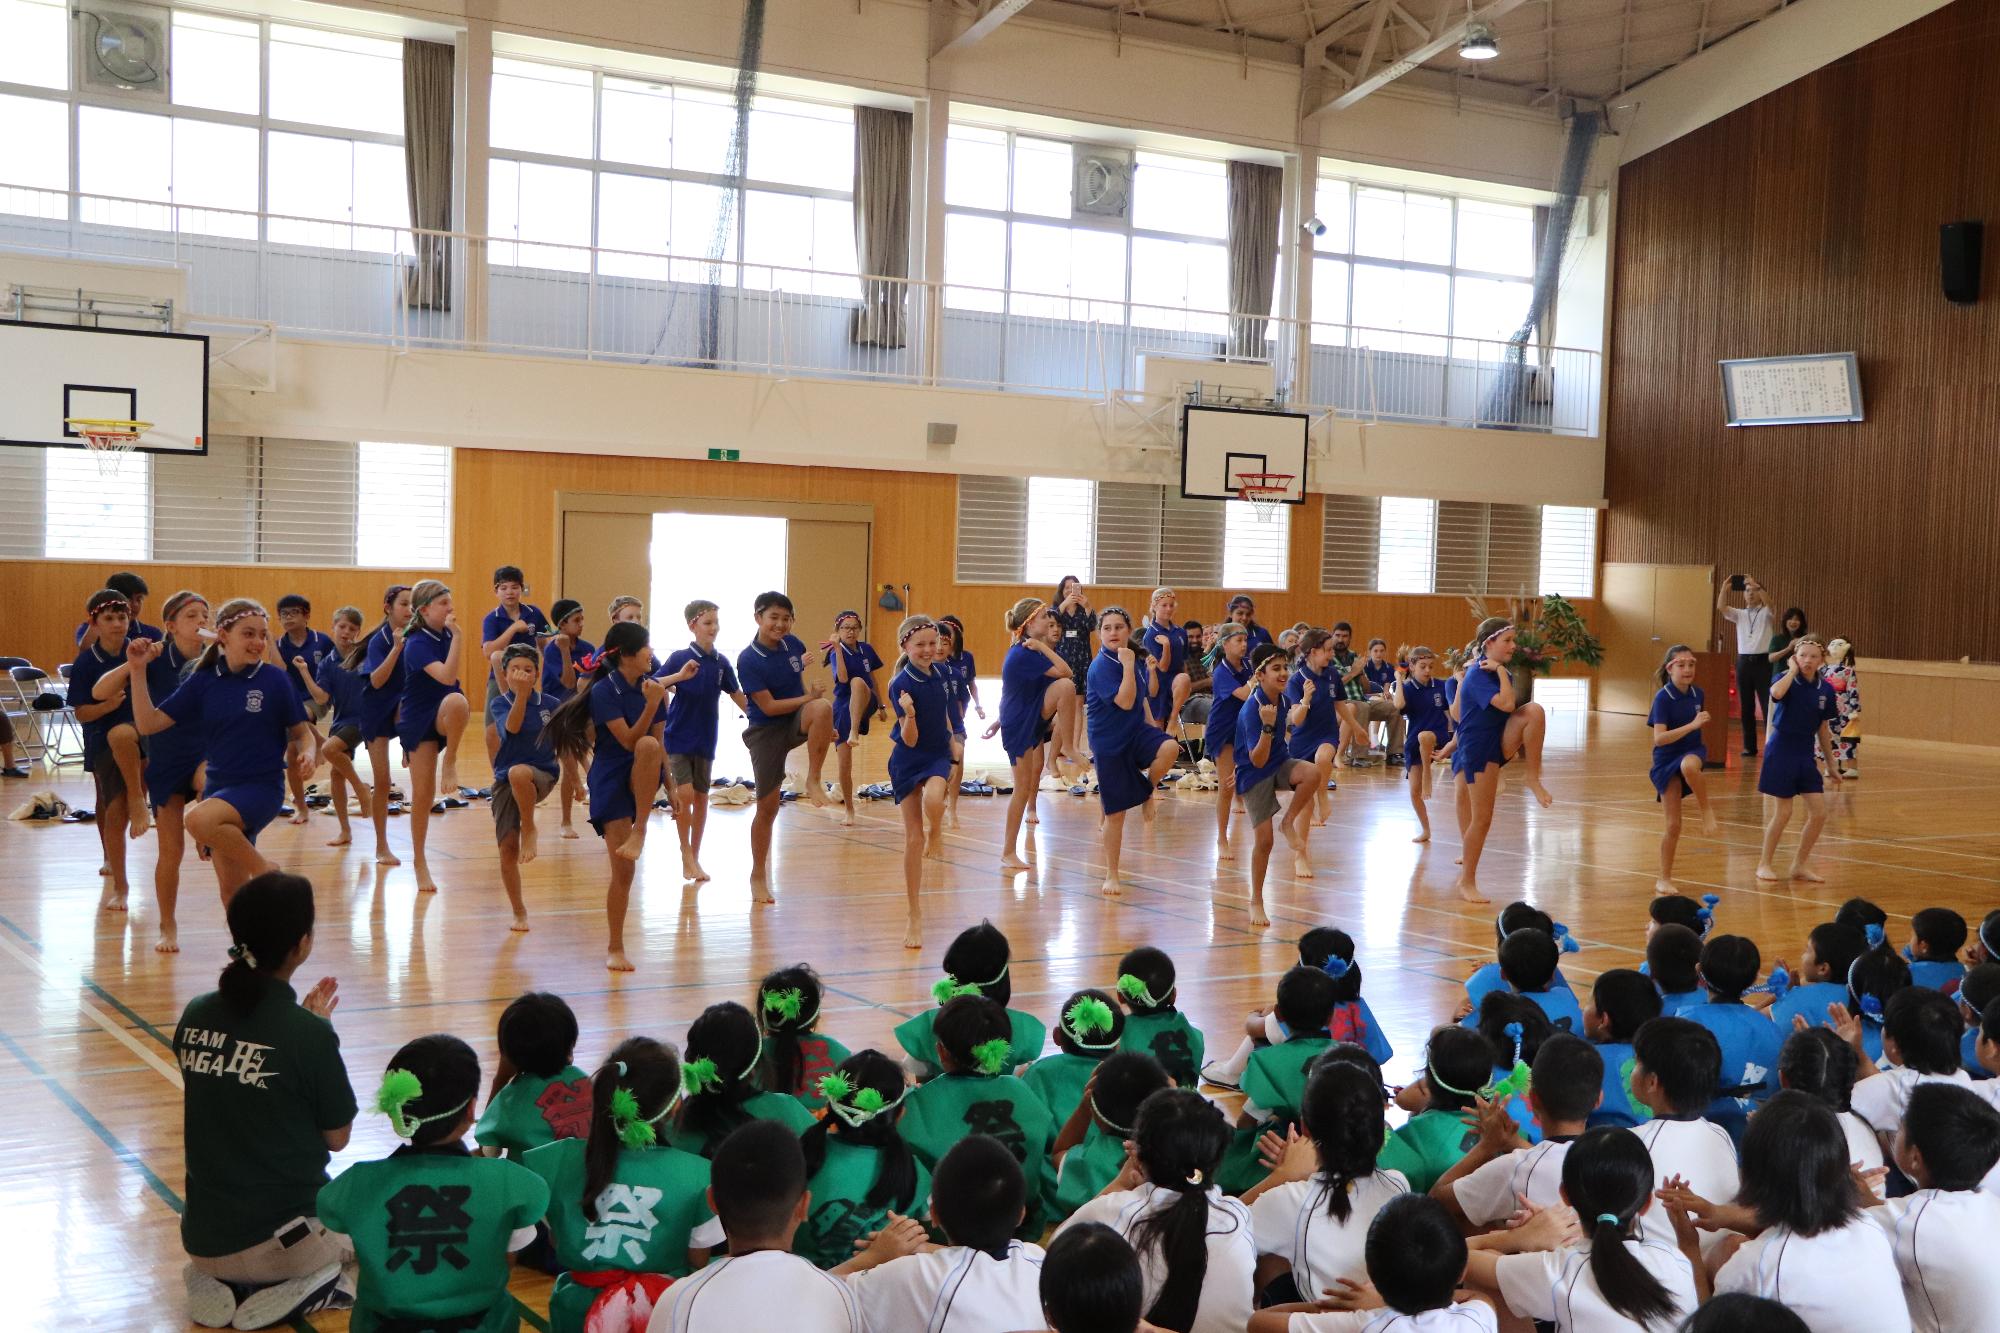 歓迎を受けたアイアンサイド小学校生がお礼のダンスをしている写真